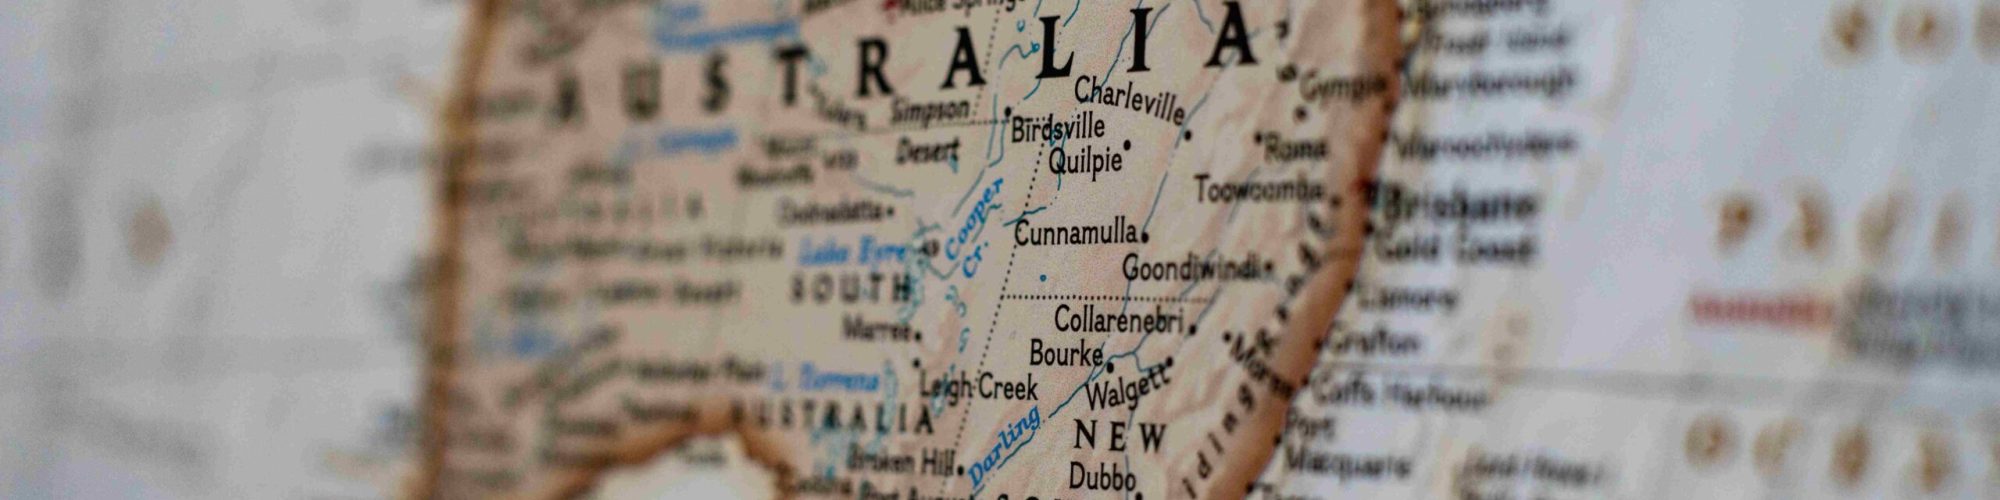 5 step per ottenere il working holiday visa per lavorare in Australia